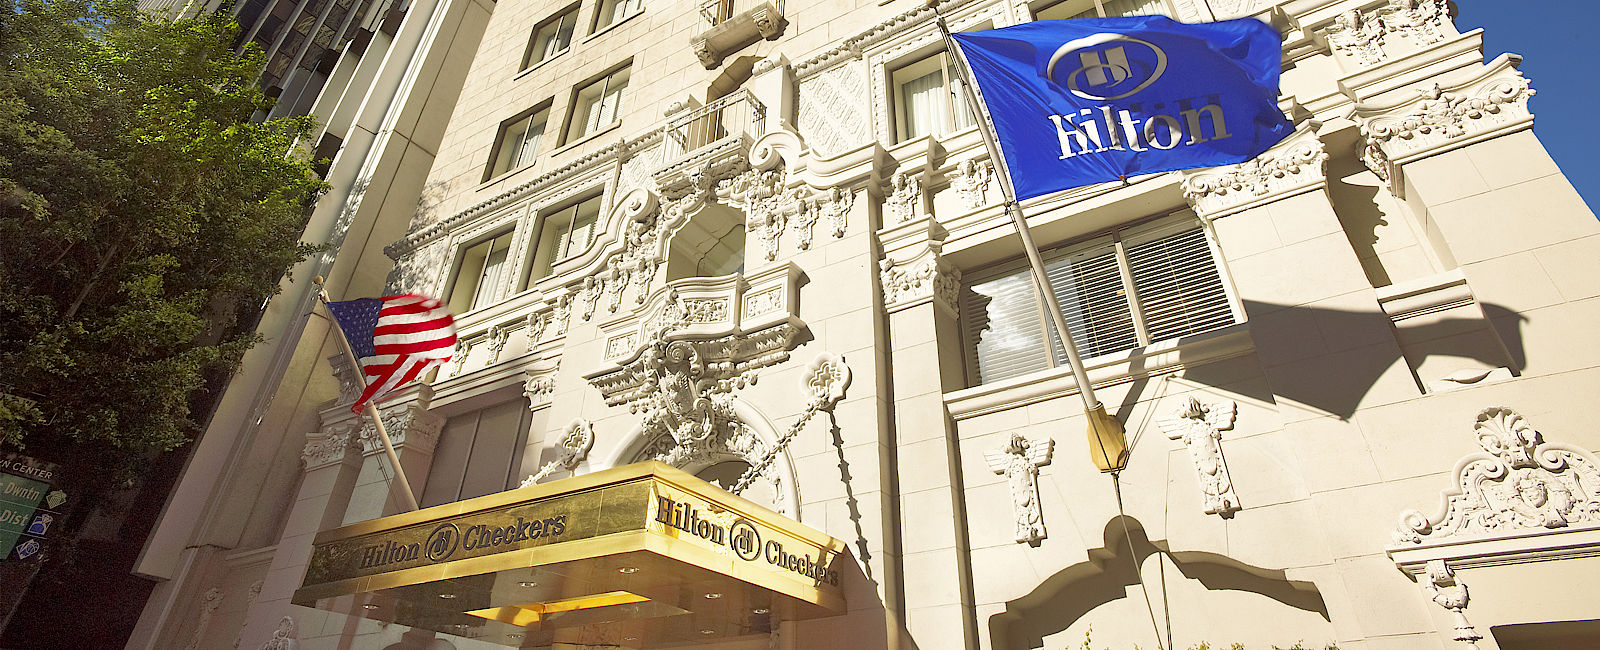 HOTELTEST
 Hilton Checkers 
 Boutique Surprise 